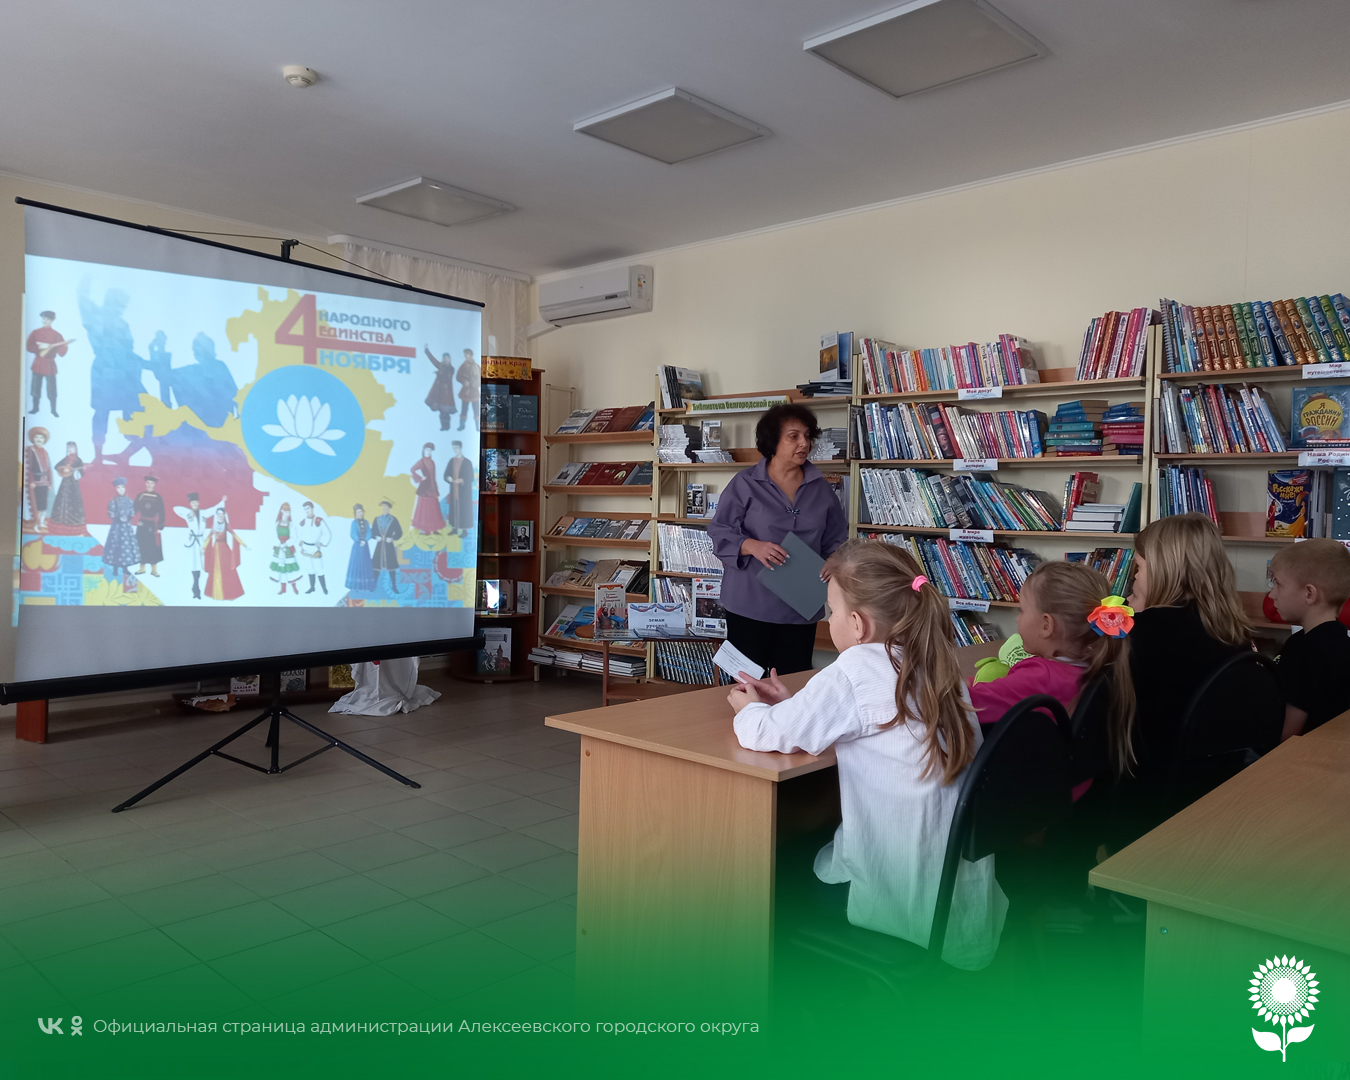 Сотрудники Городской детской модельной библиотеки №3 провели исторический хронограф «Единство через летопись веков».